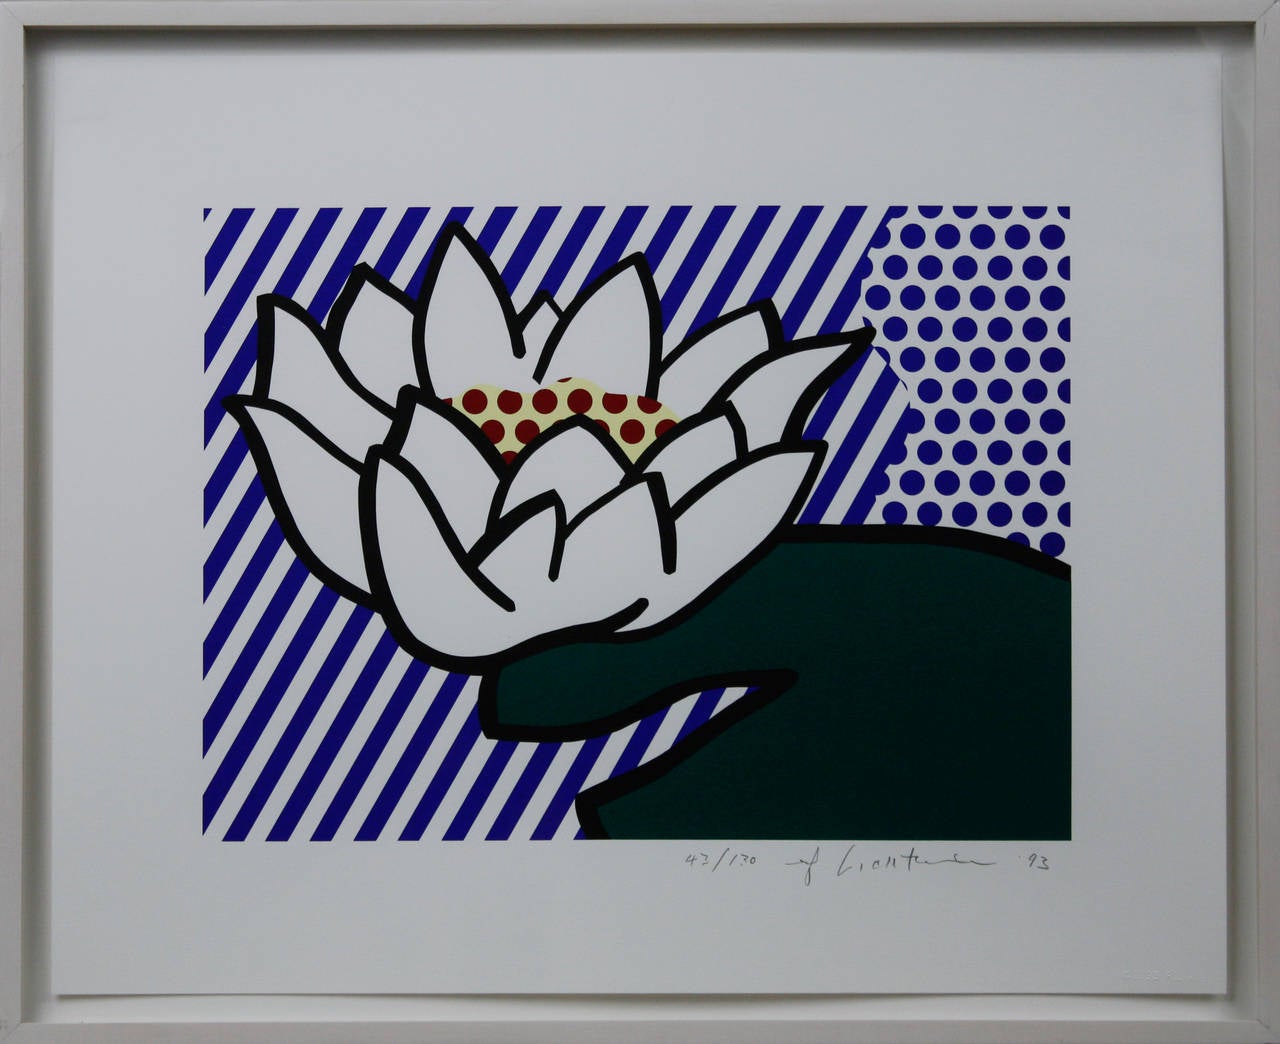 Water Lily - Print by Roy Lichtenstein